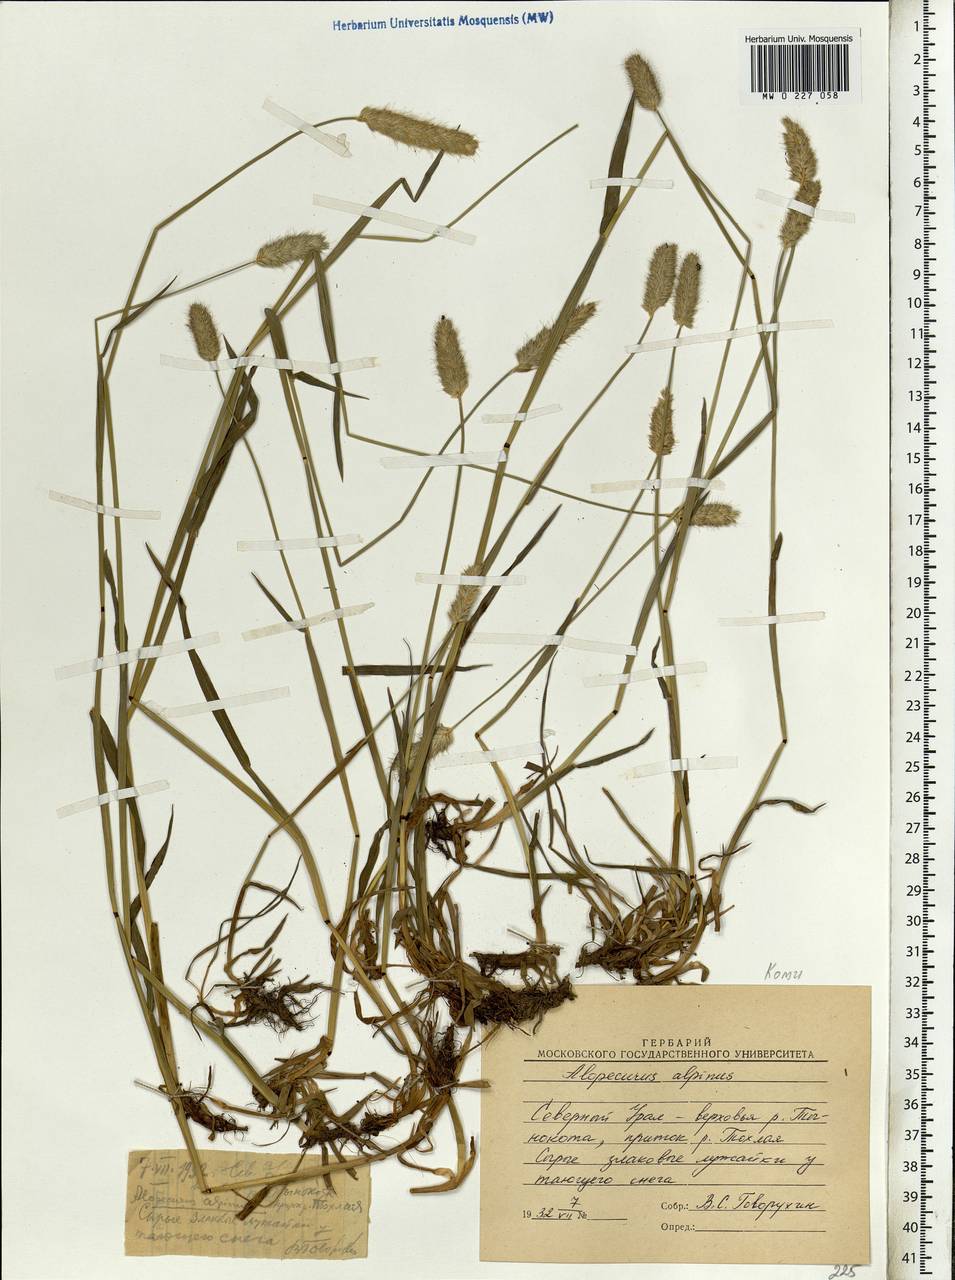 Alopecurus magellanicus Lam., Siberia, Western Siberia (S1) (Russia)